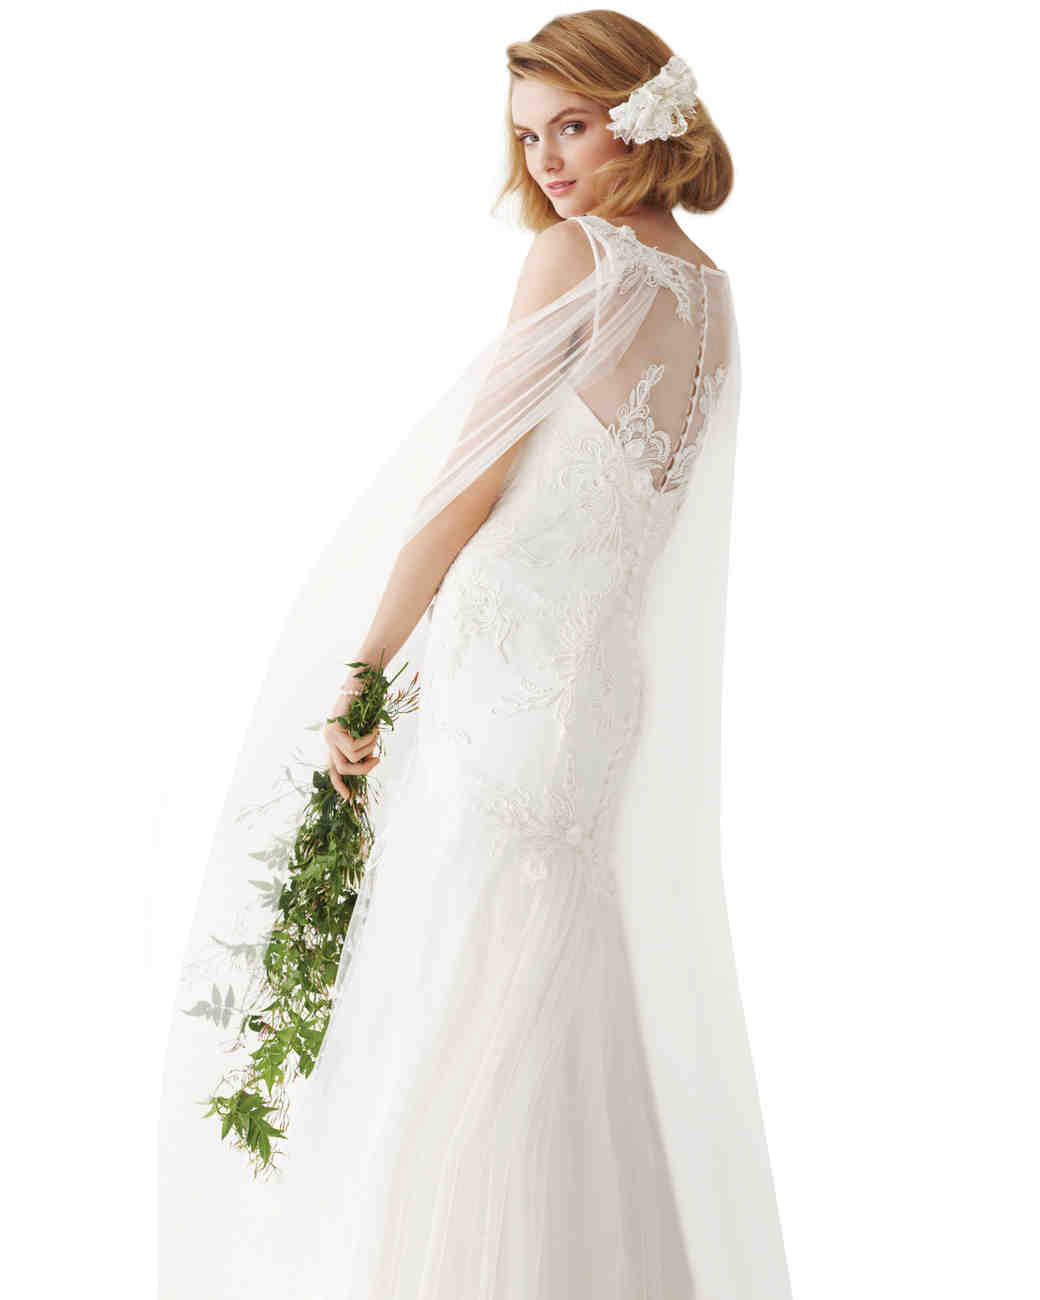 Playing Favorites: Designers' Wedding Dress Picks | Martha Stewart Weddings